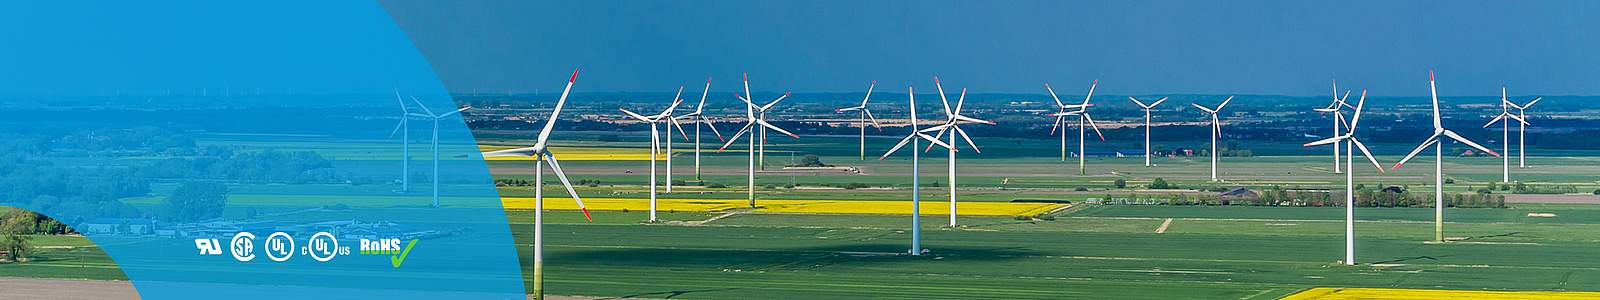 Kabels voor windenergie (turbine)